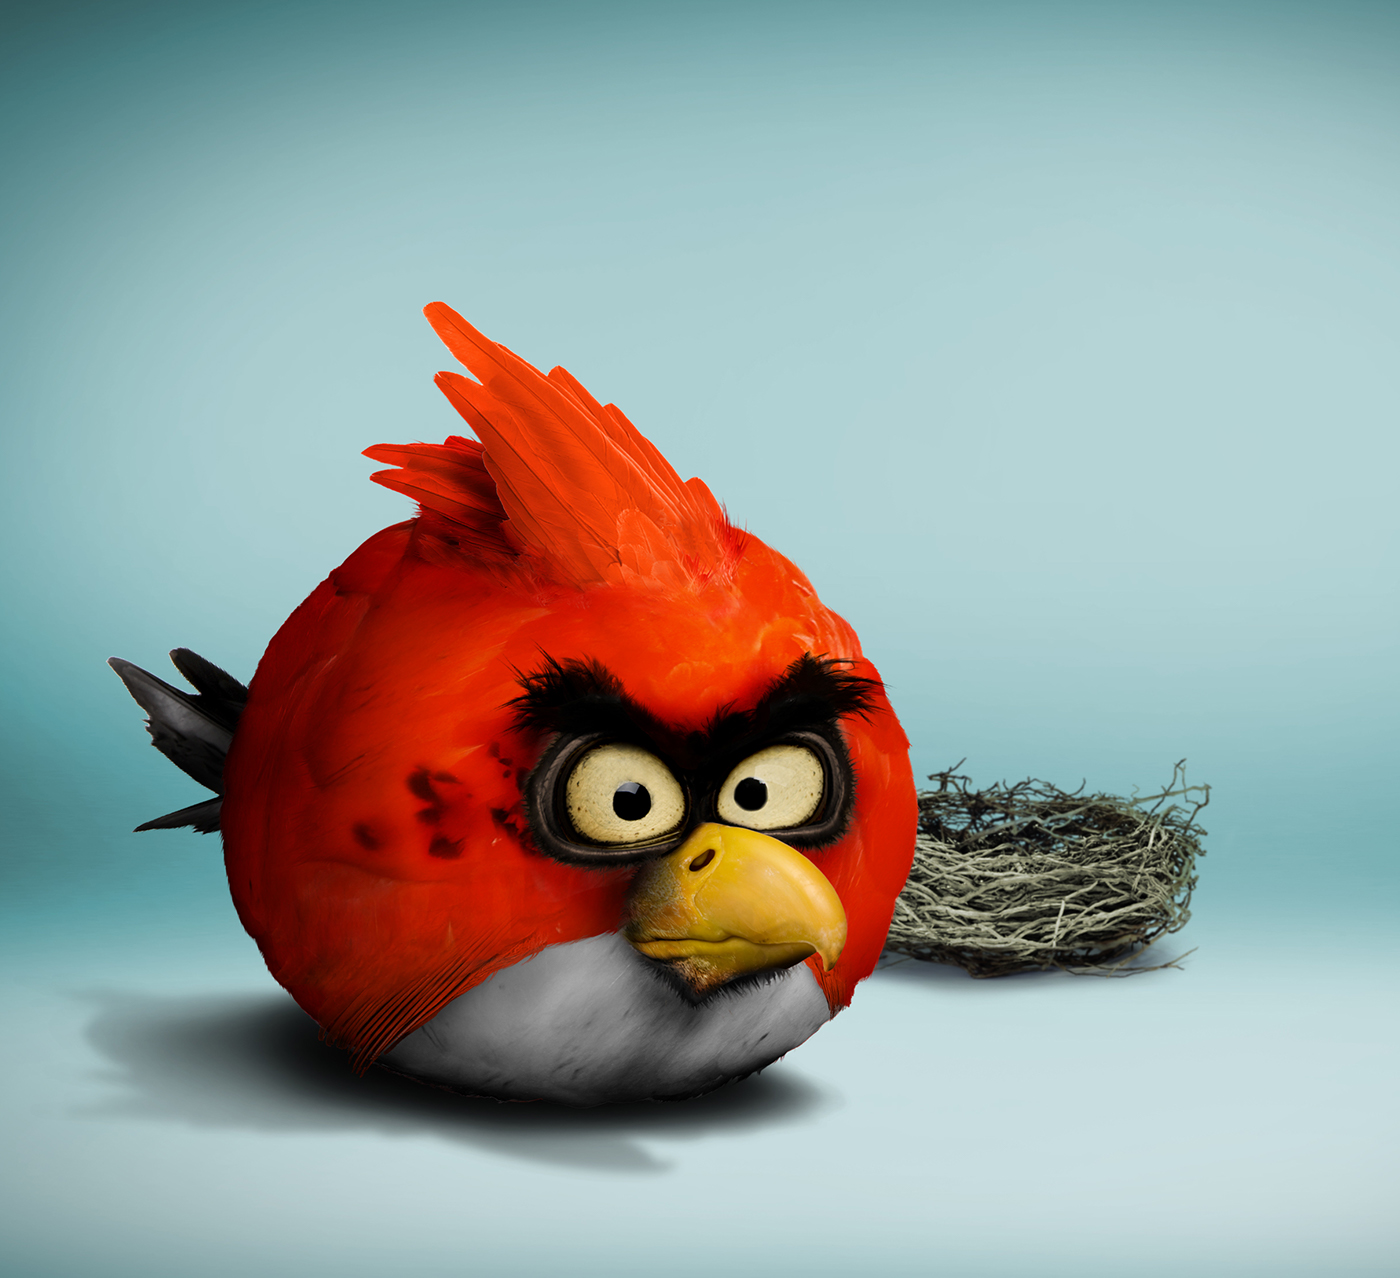 angrybird,angry birds, angry,bird, birds,red,rovio,Ecuador,photoshop,Char.....